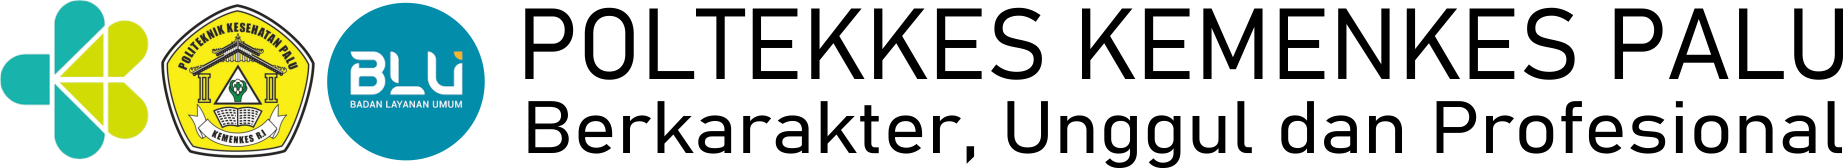 Poltekkes Palu Logo